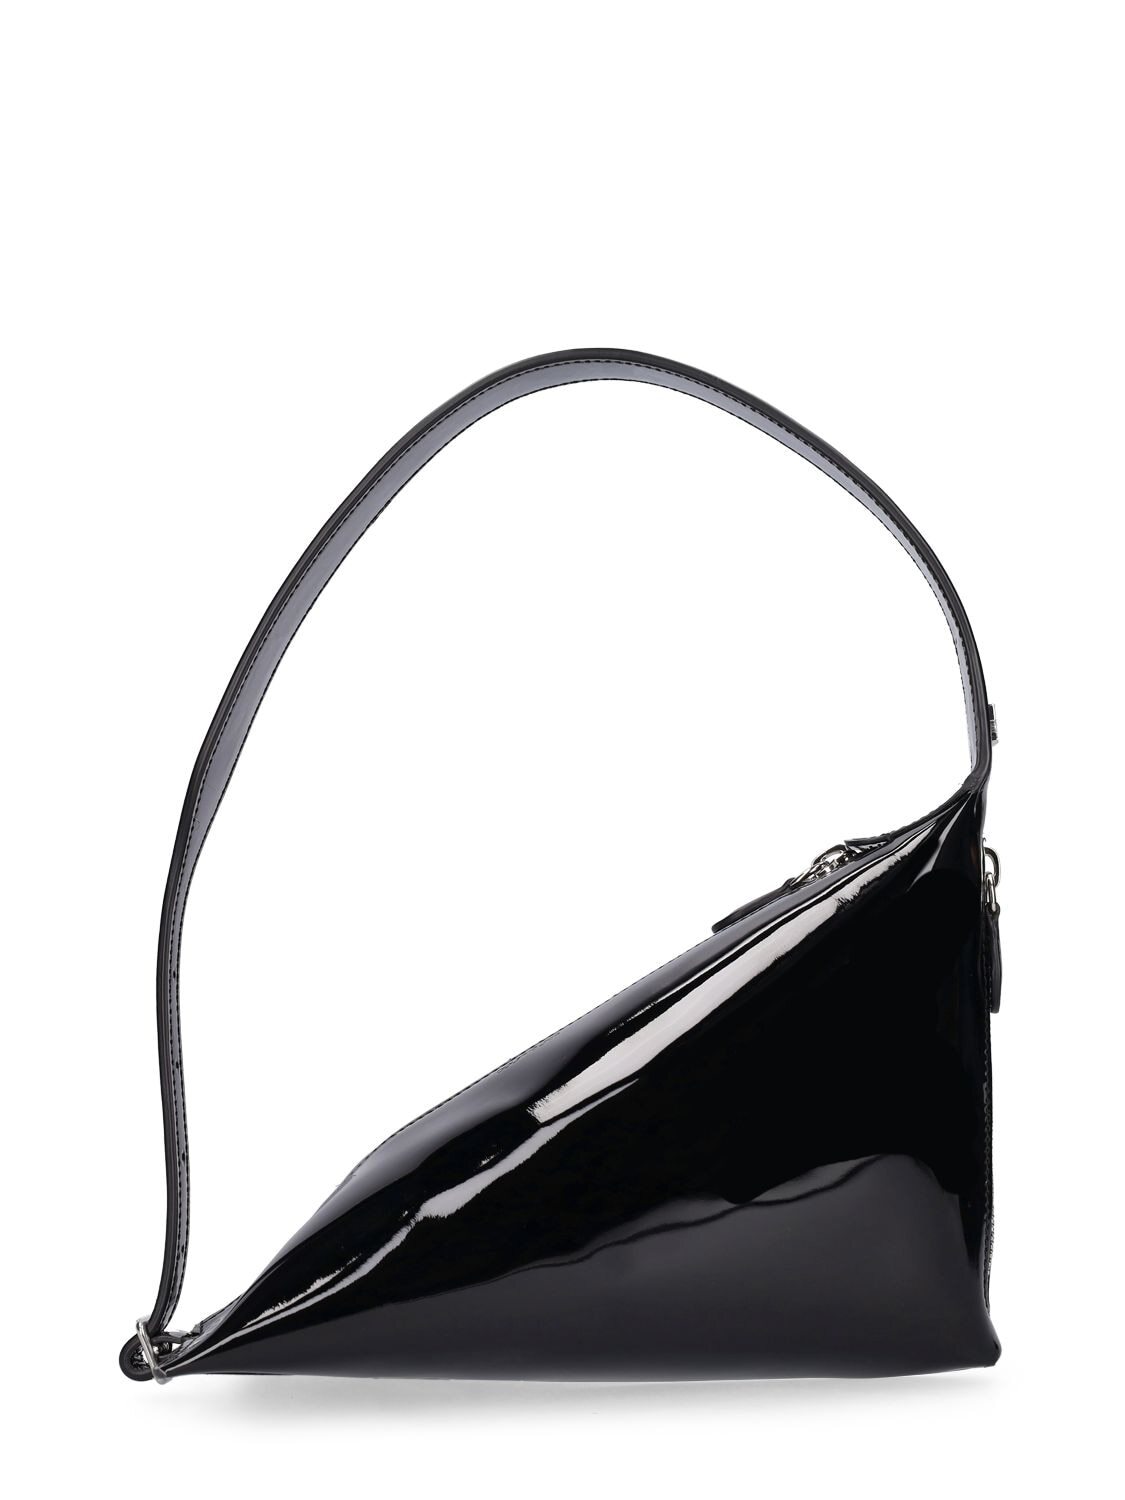 COURREGES Baby Shark Patent Leather Shoulder Bag in black